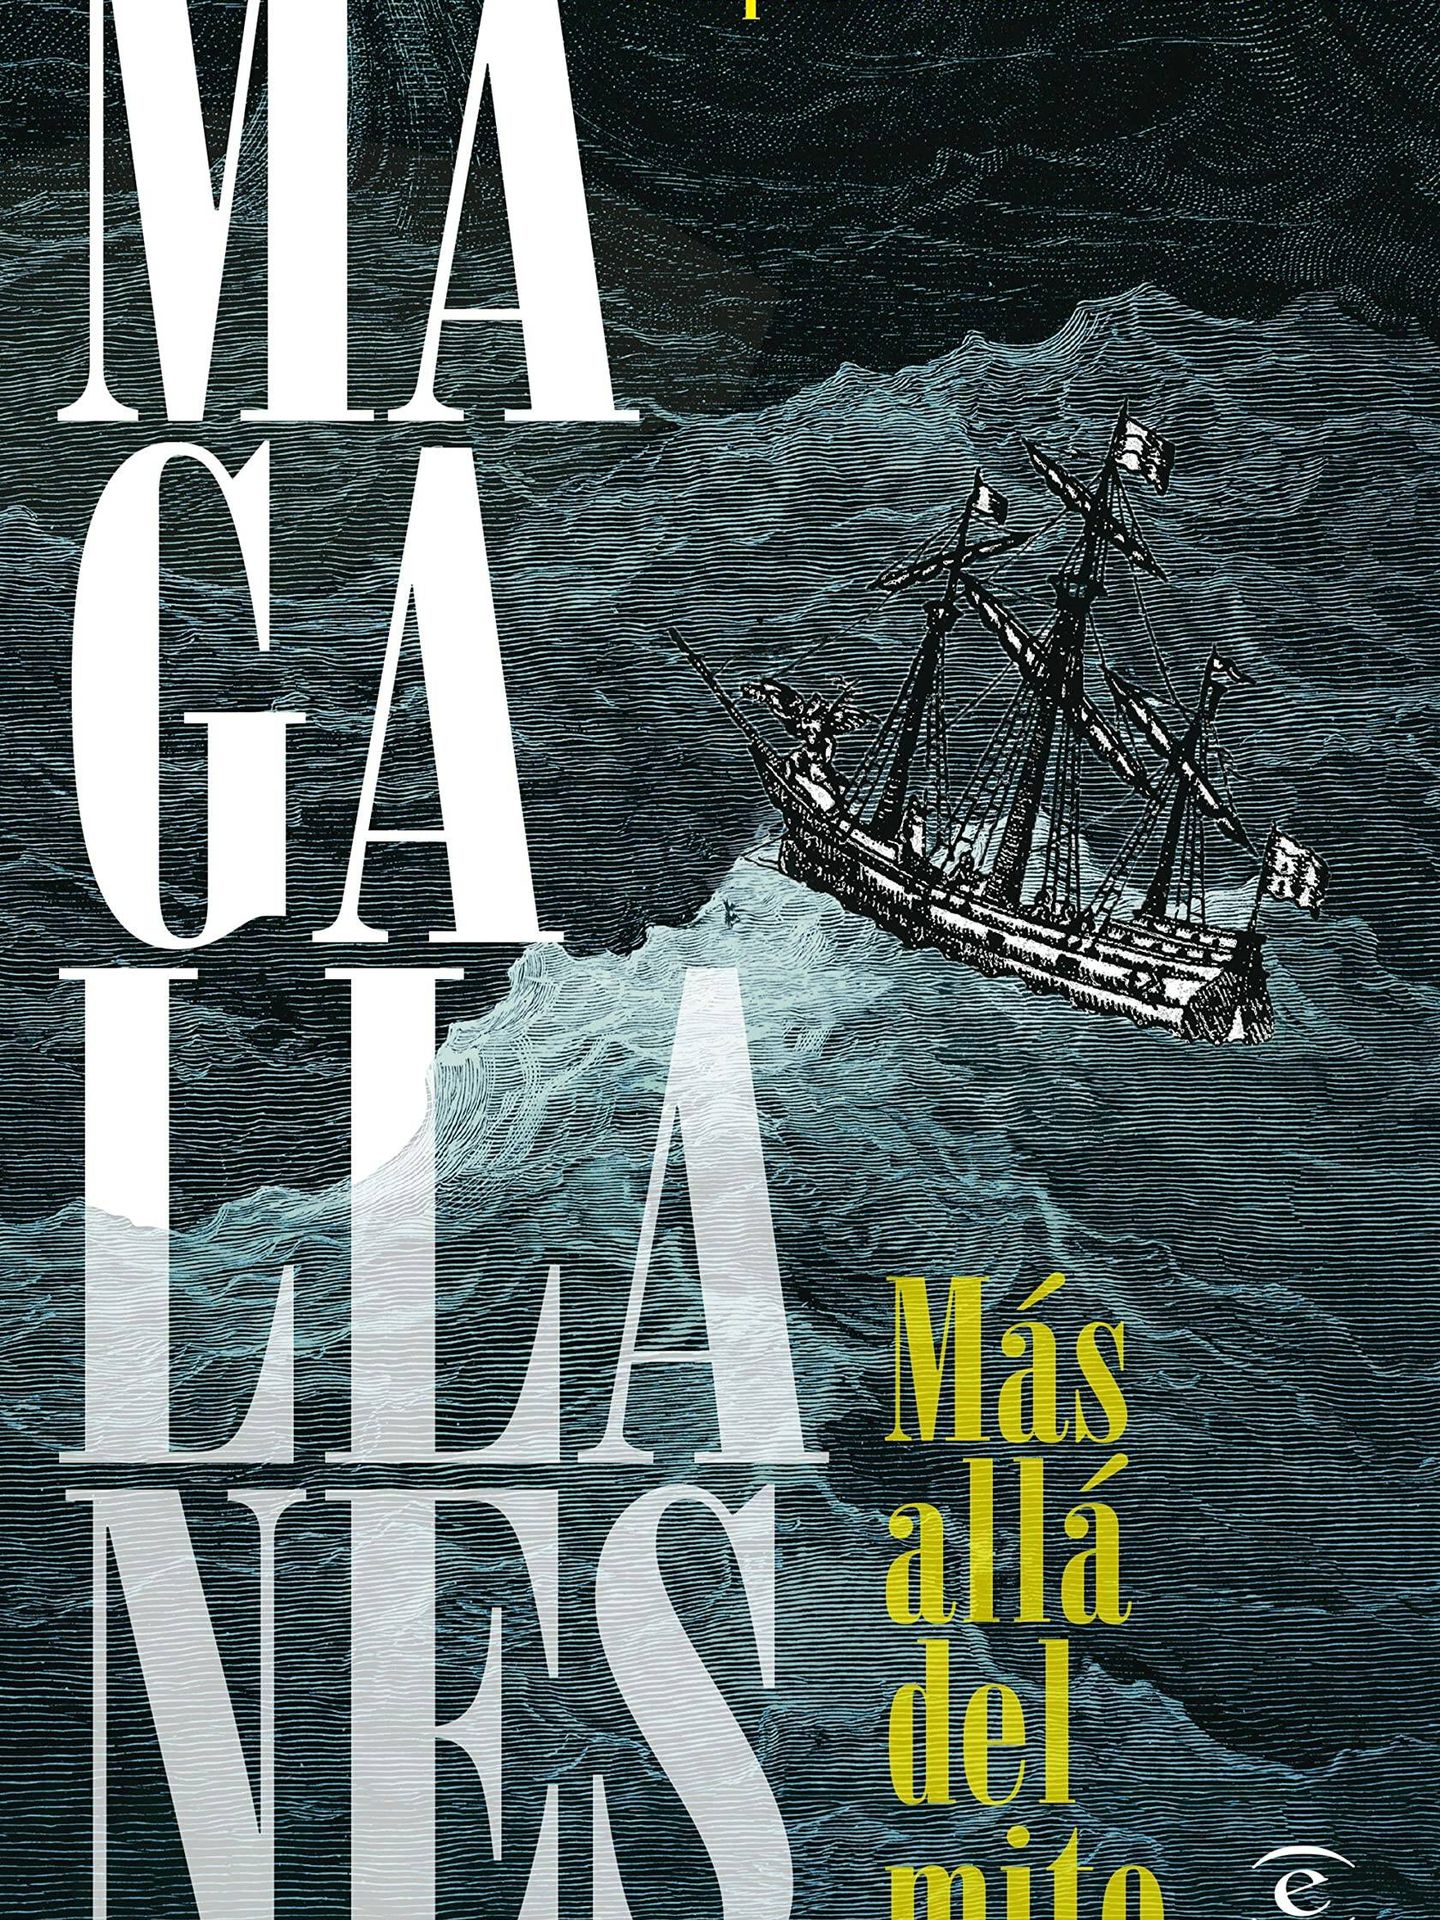 'Magallanes. Más allá del mito', de Fernández-Armesto. (Espasa)